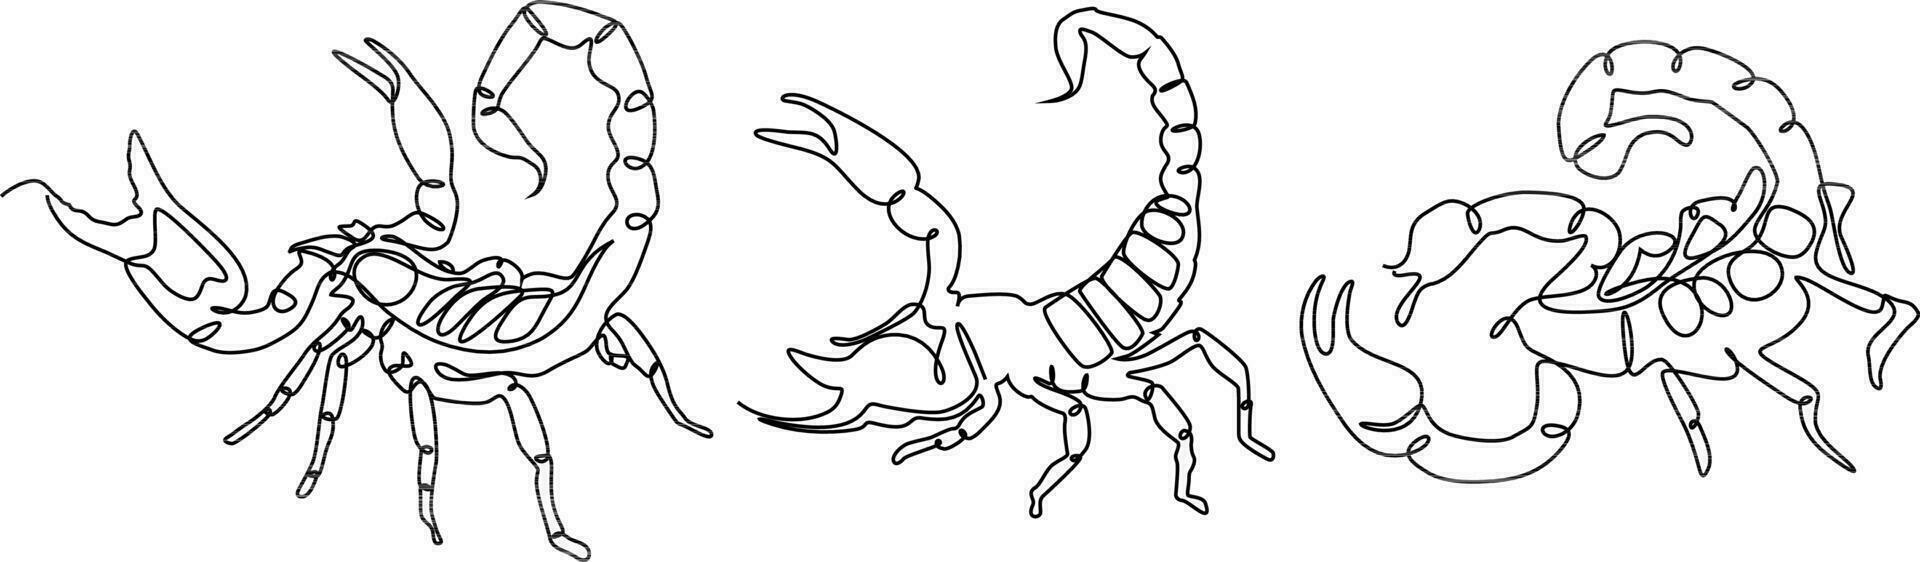 skorpion kontinuerlig linje uppsättning illustration vektor